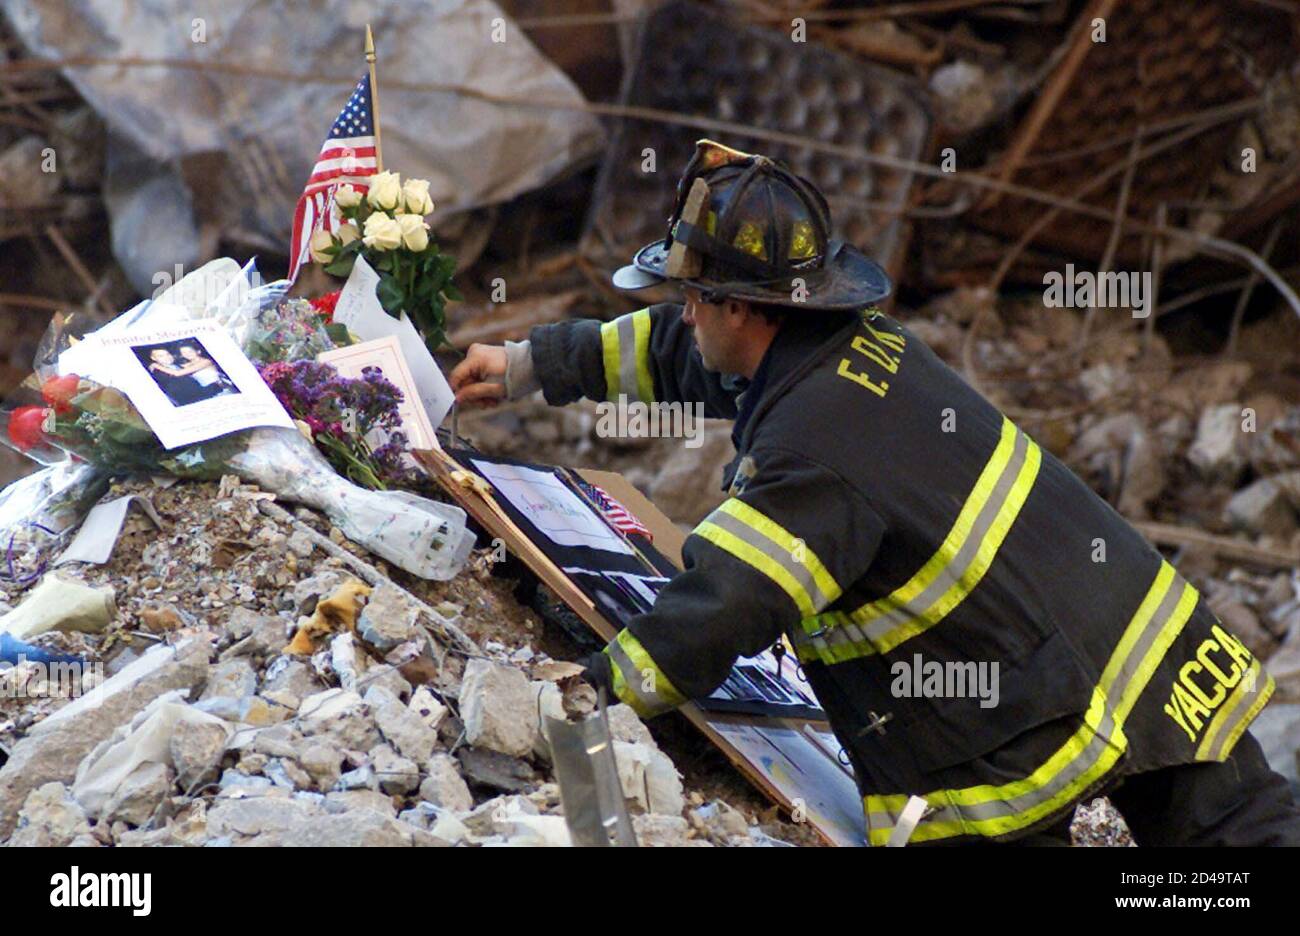 Un vigile del fuoco di New York City colloca fiori e ricordi dei membri della famiglia delle vittime del disastro del World Trade Center nel relitto a seguito di un servizio commemorativo per le vittime dell'attacco del 11 settembre presso il sito di New York, il 28 ottobre 2001. REUTERS/Mike Segar MS Foto Stock